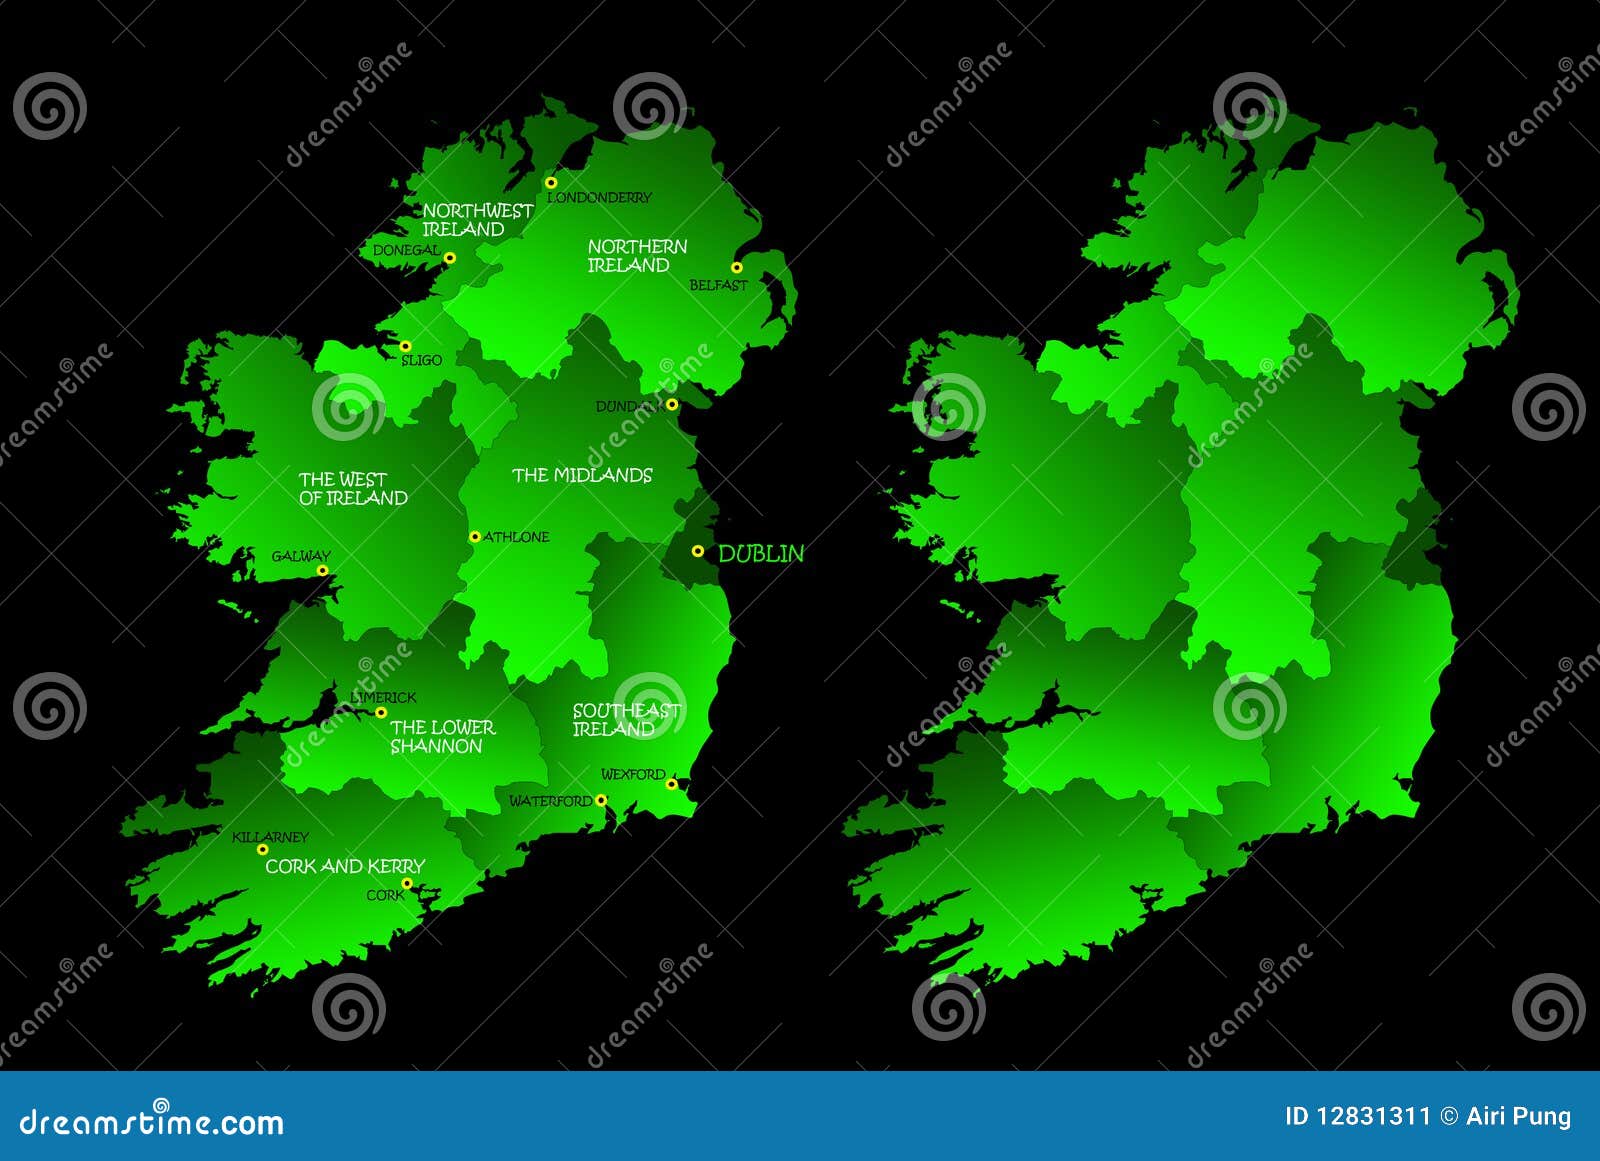 Un programma di intera Irlanda con le regioni sul continente colorato in verde e nelle città principali. Continente isolato su una priorità bassa nera. Illustrazione di vettore.